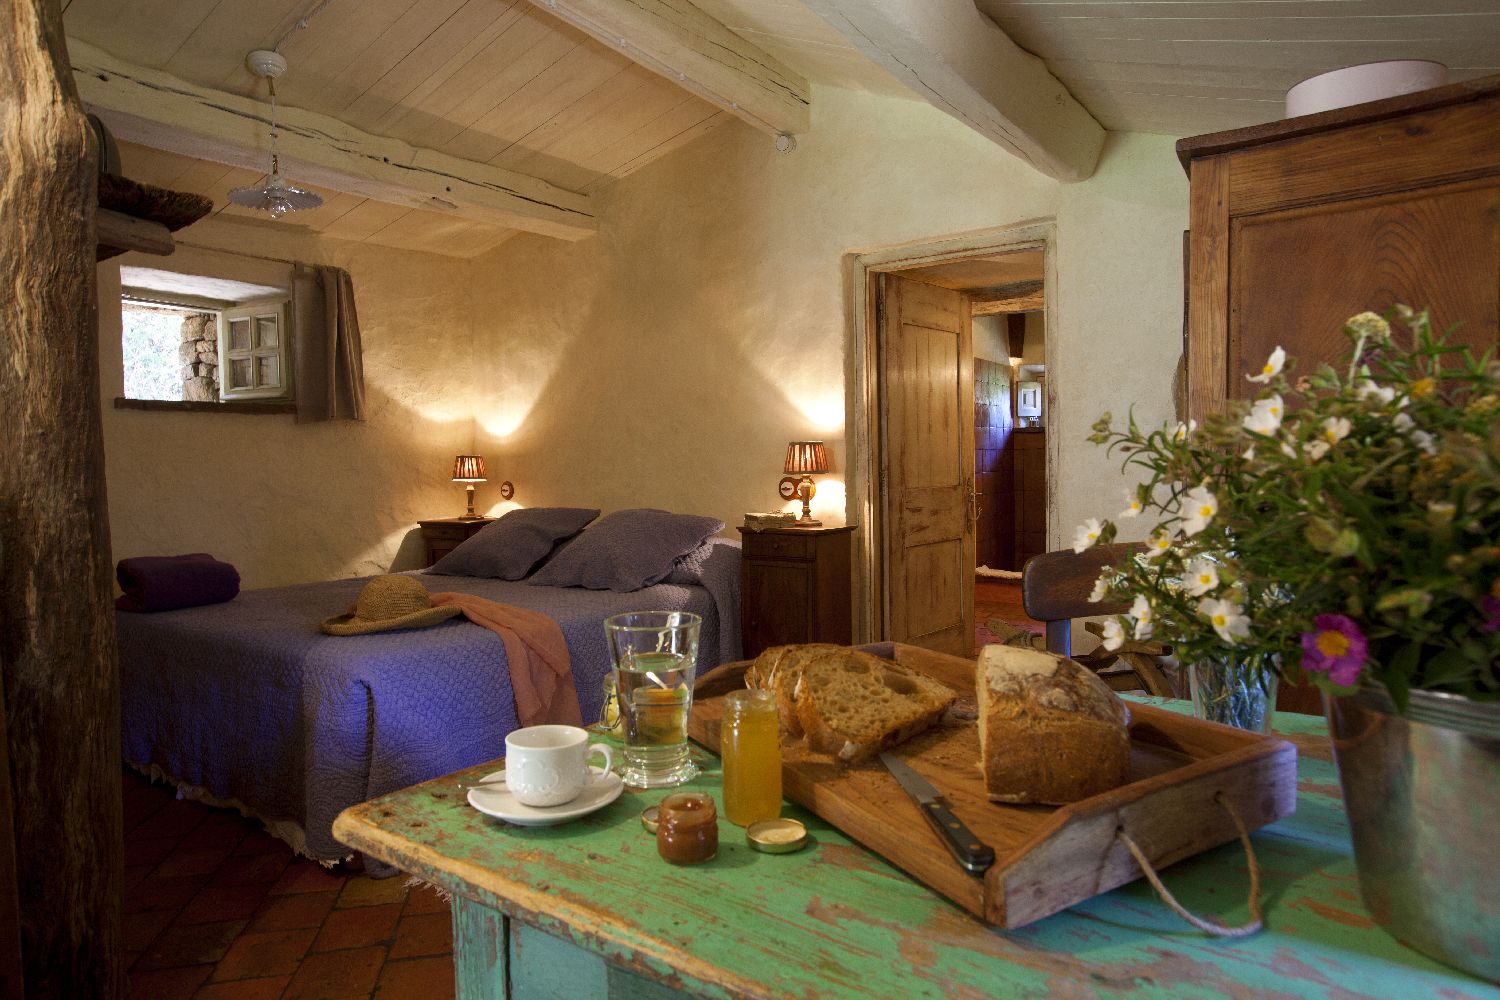 golf-expedition-golf-reizen-frankrijk-regio-corsica-domaine-de-murtoli-stijlvolle-slaapkamer-twee-personen-ontbijt.jpg